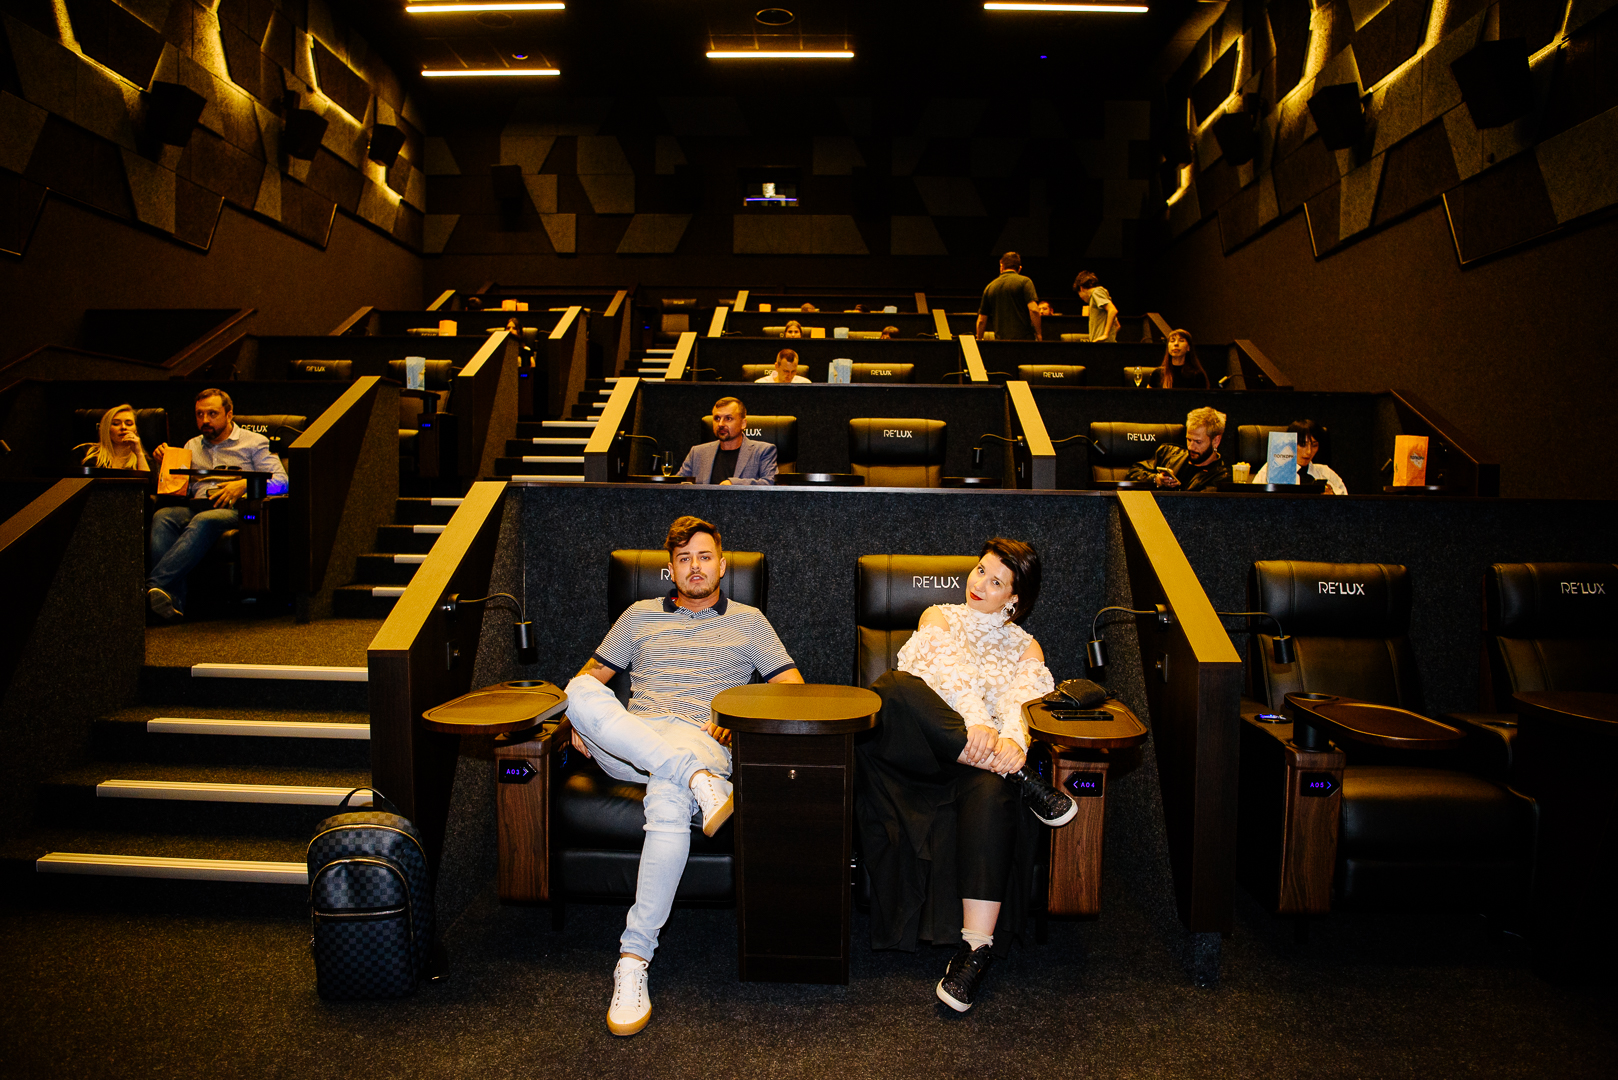 В зале кинотеатра 500 кресел которые расставлены одинаковыми рядами по 25